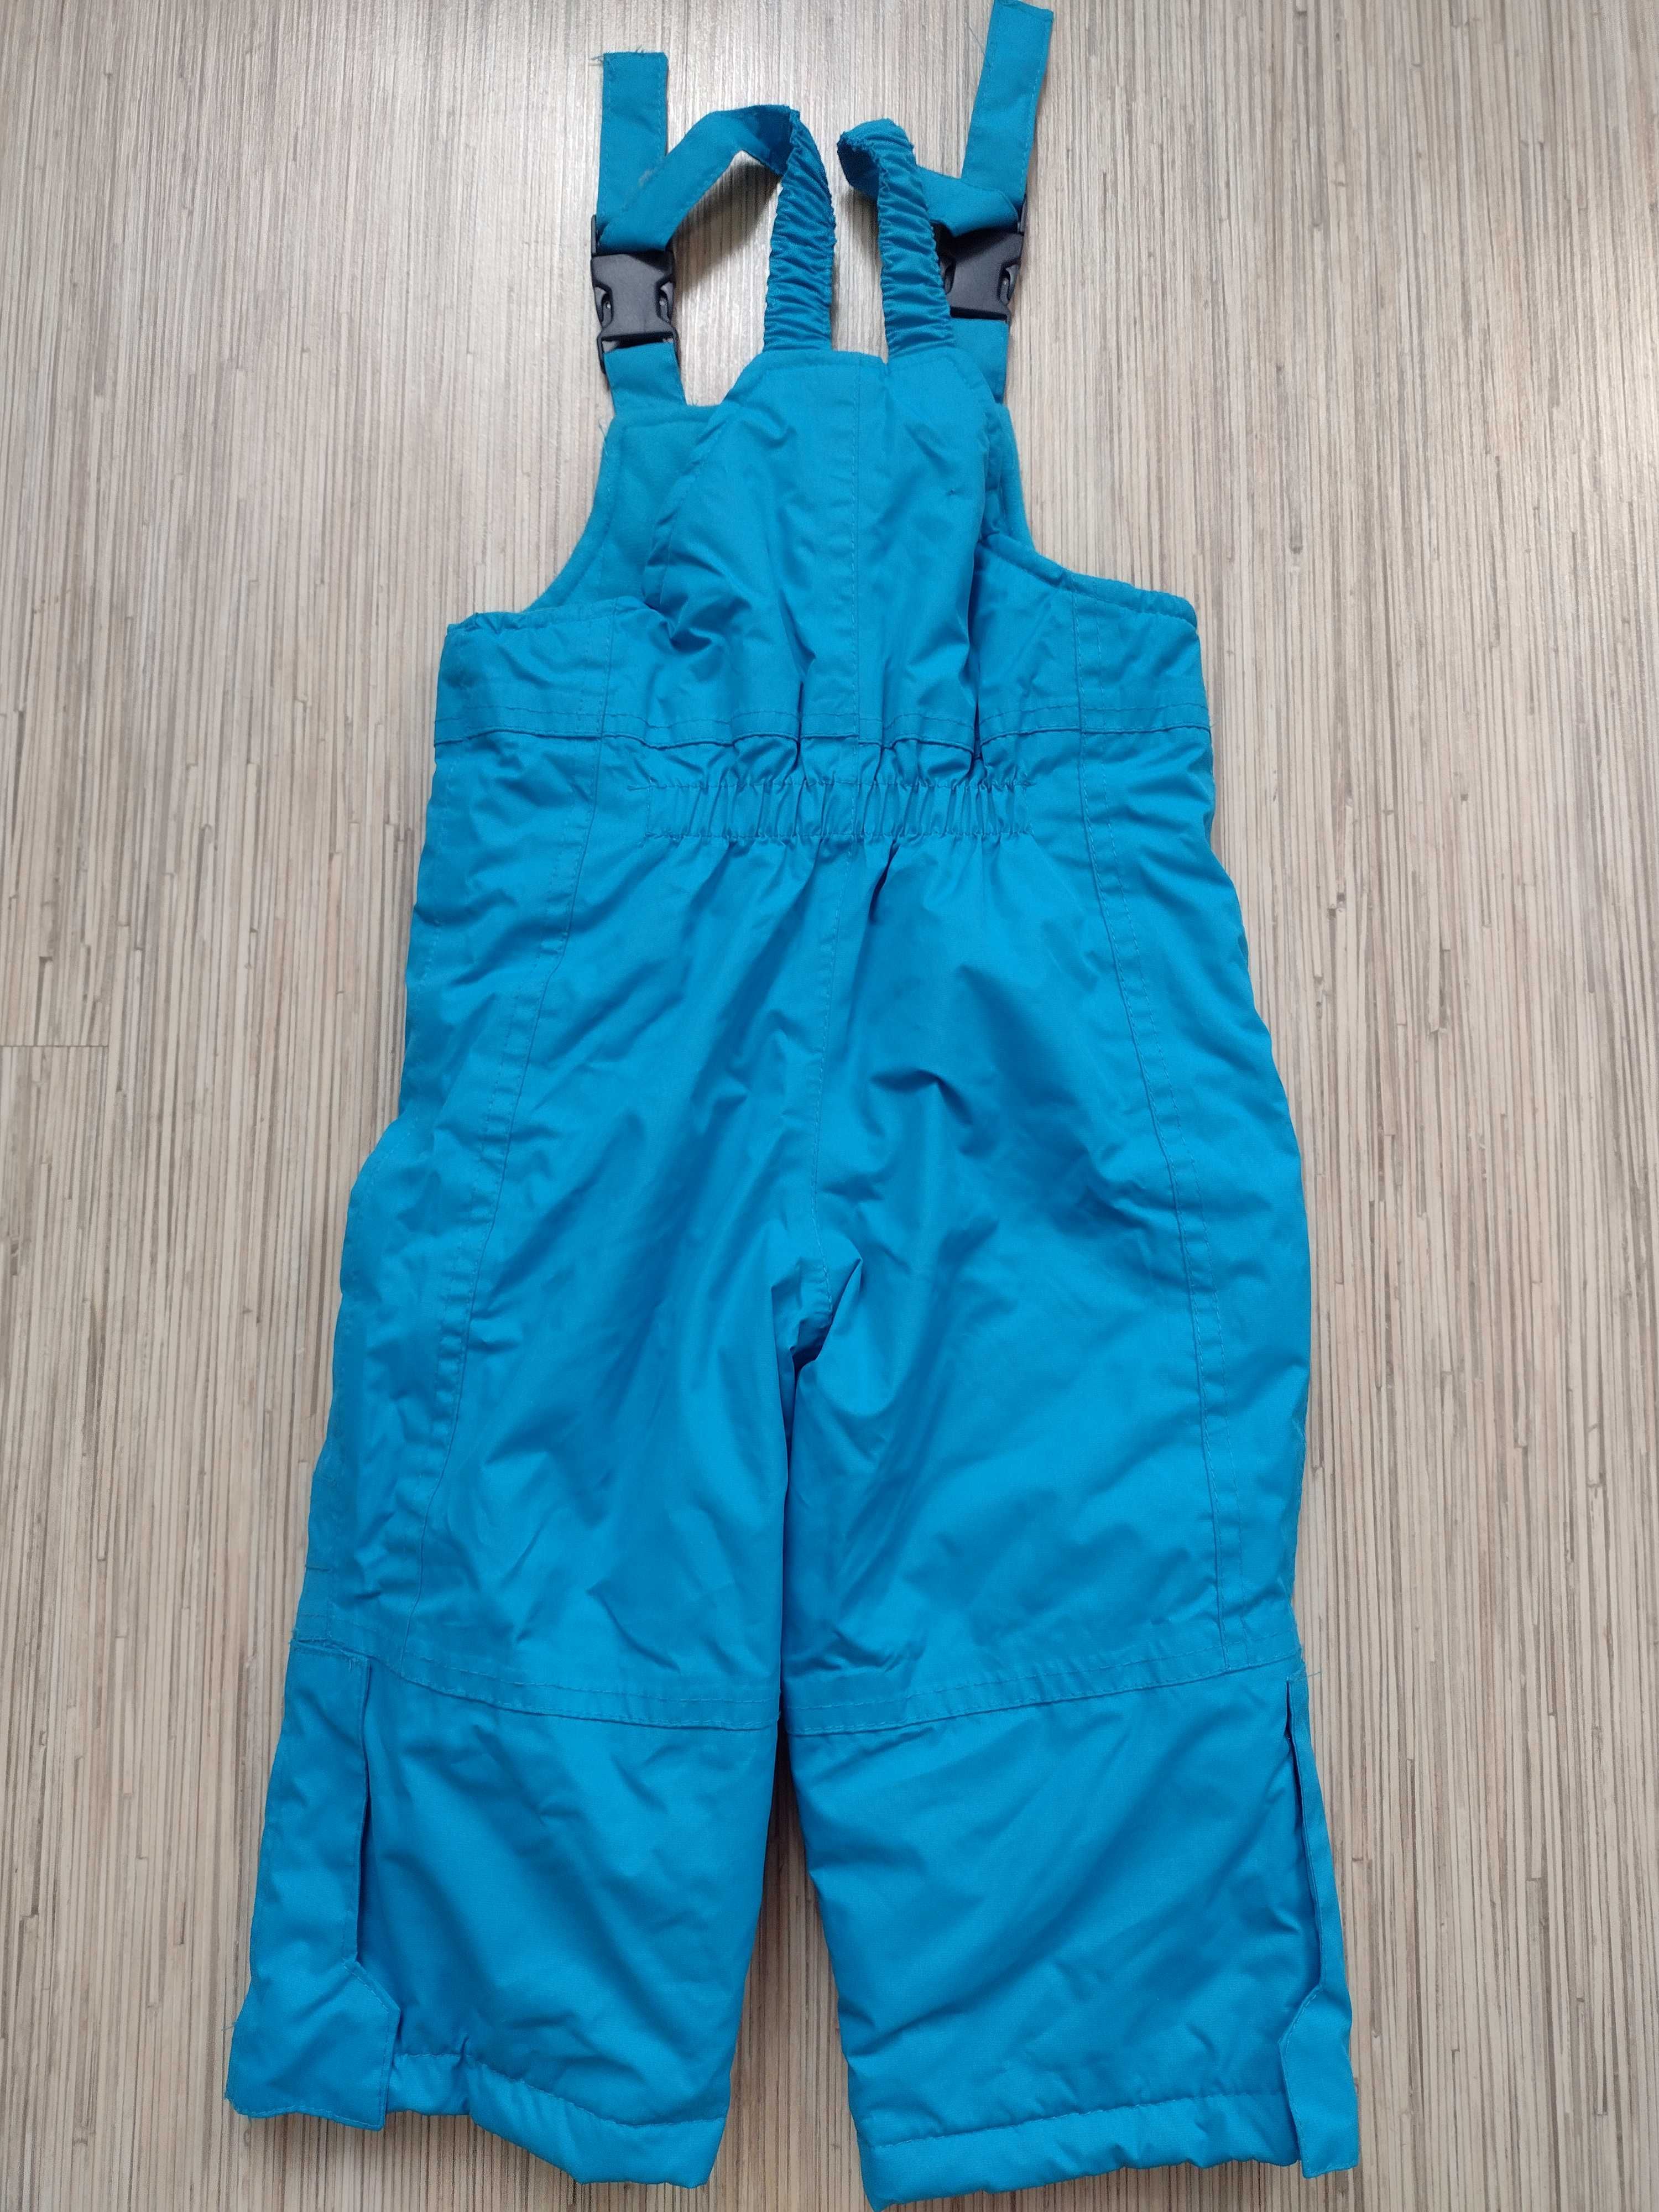 NOWE ~ IMPIDIMPI, rozmiar 74/80, spodnie narciarskie dla chłopca